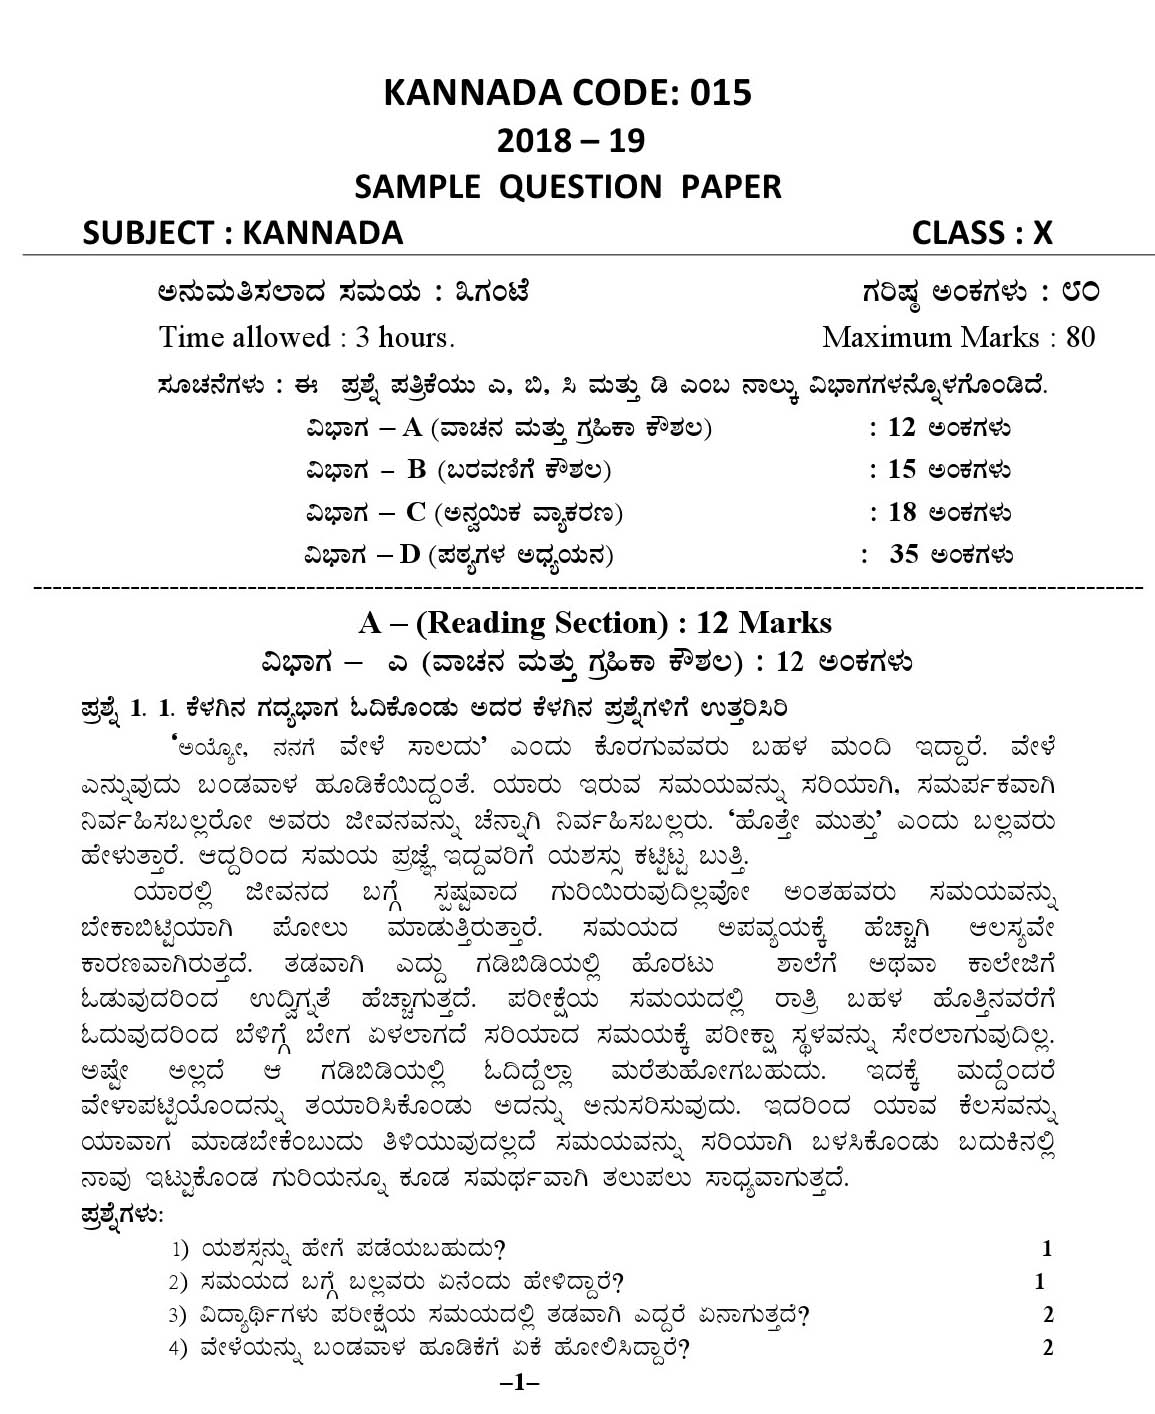 Kannada CBSE Class X Sample Question Paper 2018-19 - Image 1